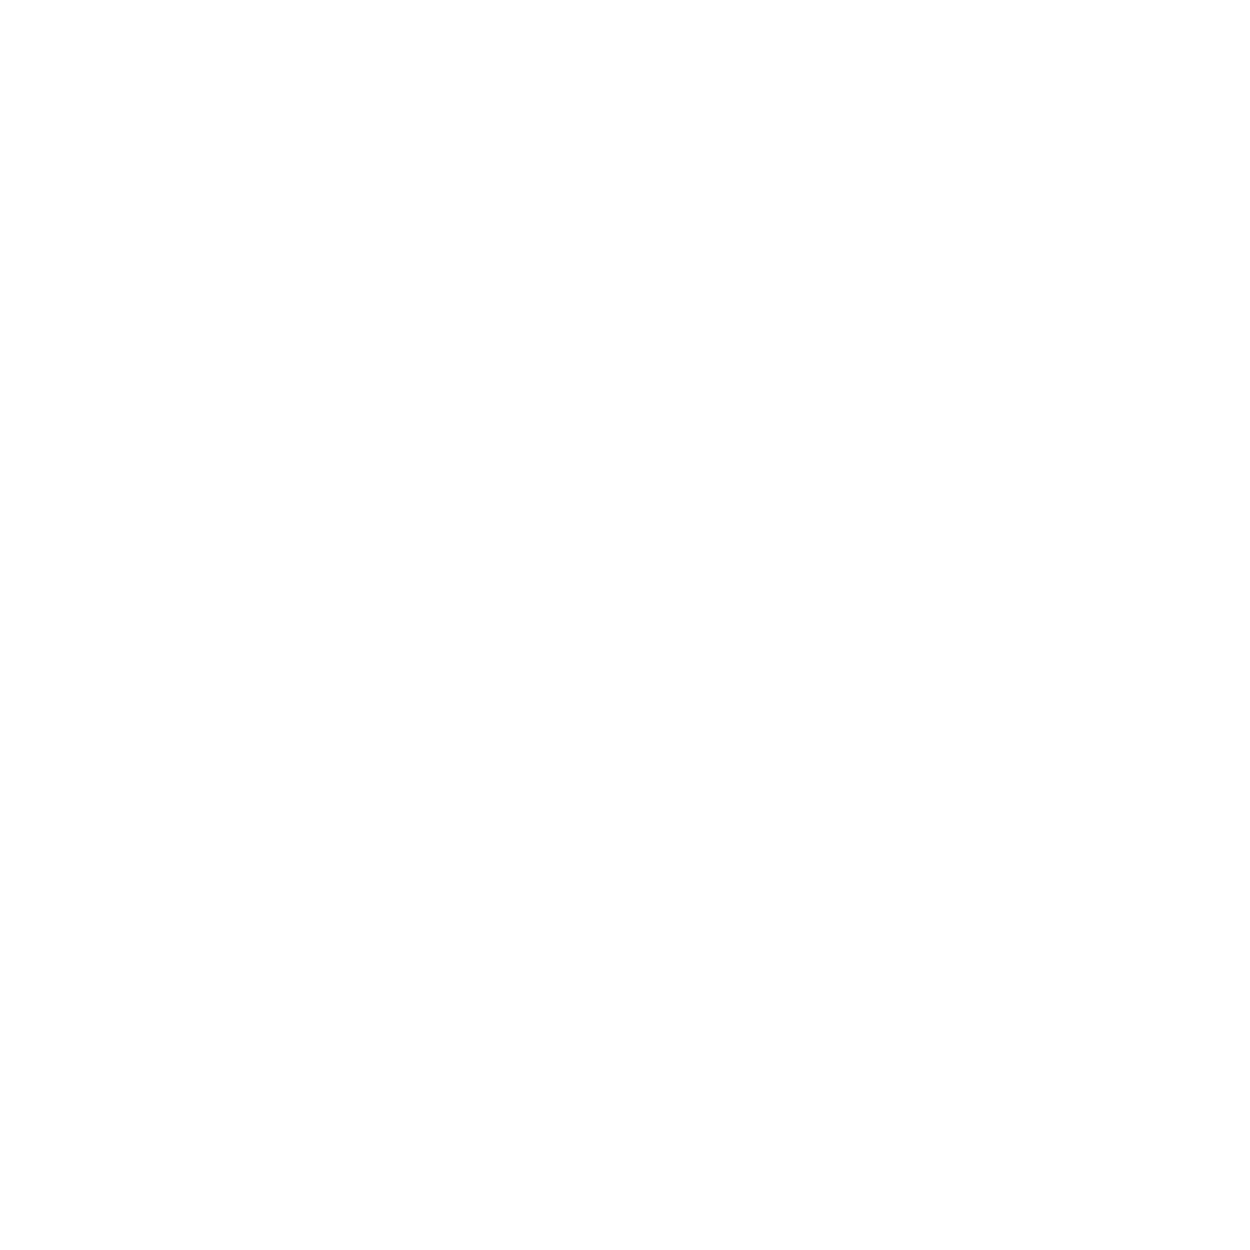 Patch Night